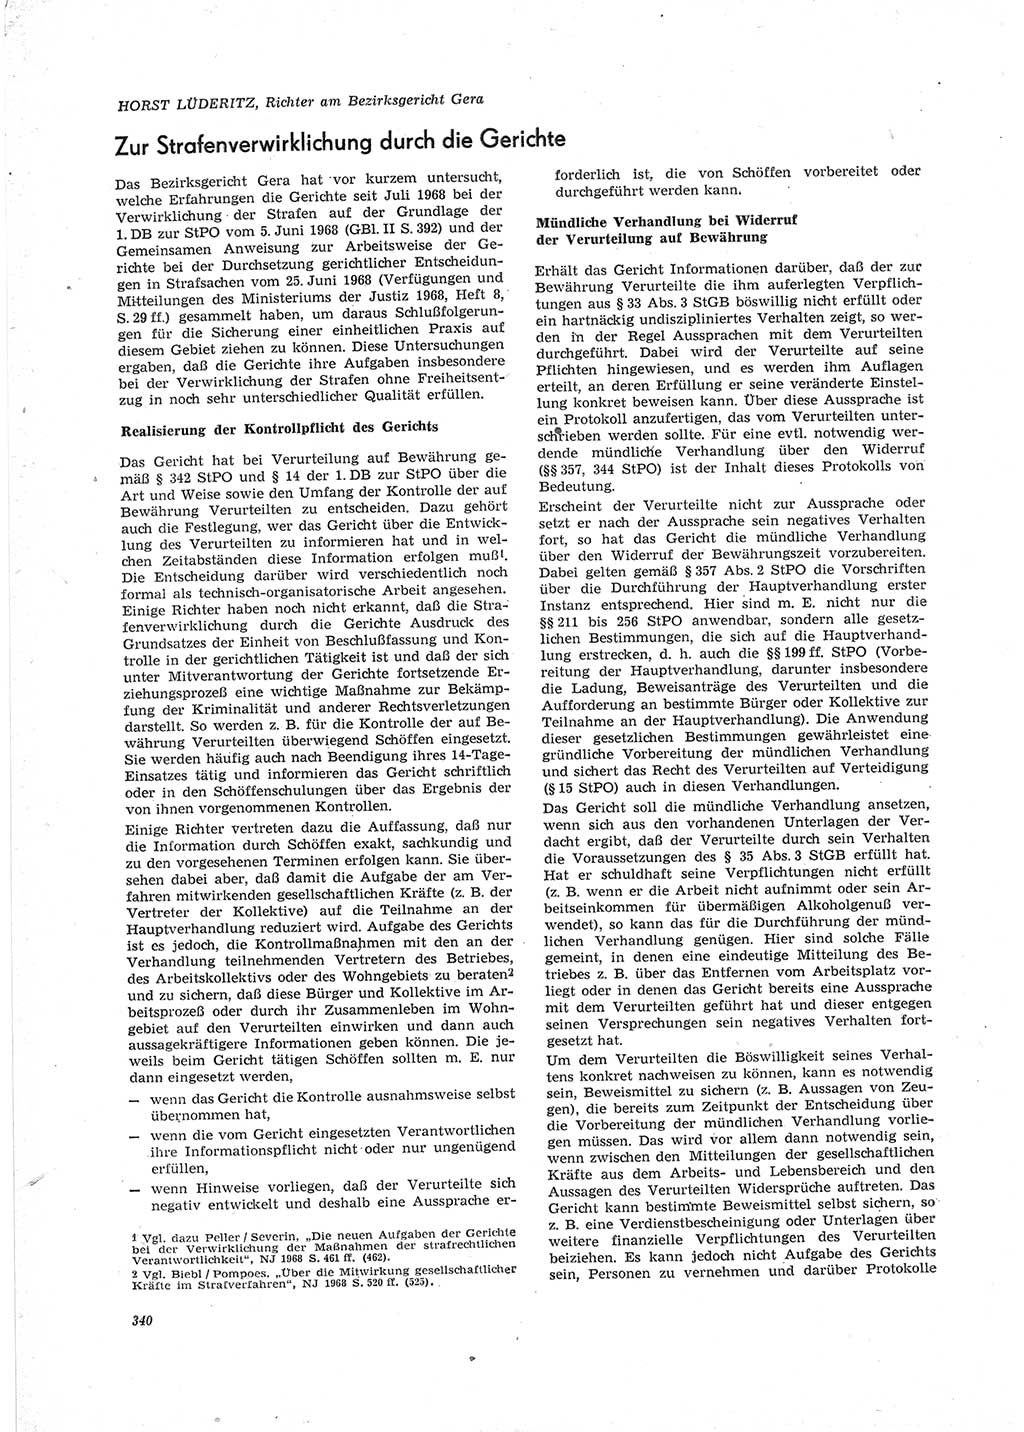 Neue Justiz (NJ), Zeitschrift für Recht und Rechtswissenschaft [Deutsche Demokratische Republik (DDR)], 23. Jahrgang 1969, Seite 340 (NJ DDR 1969, S. 340)